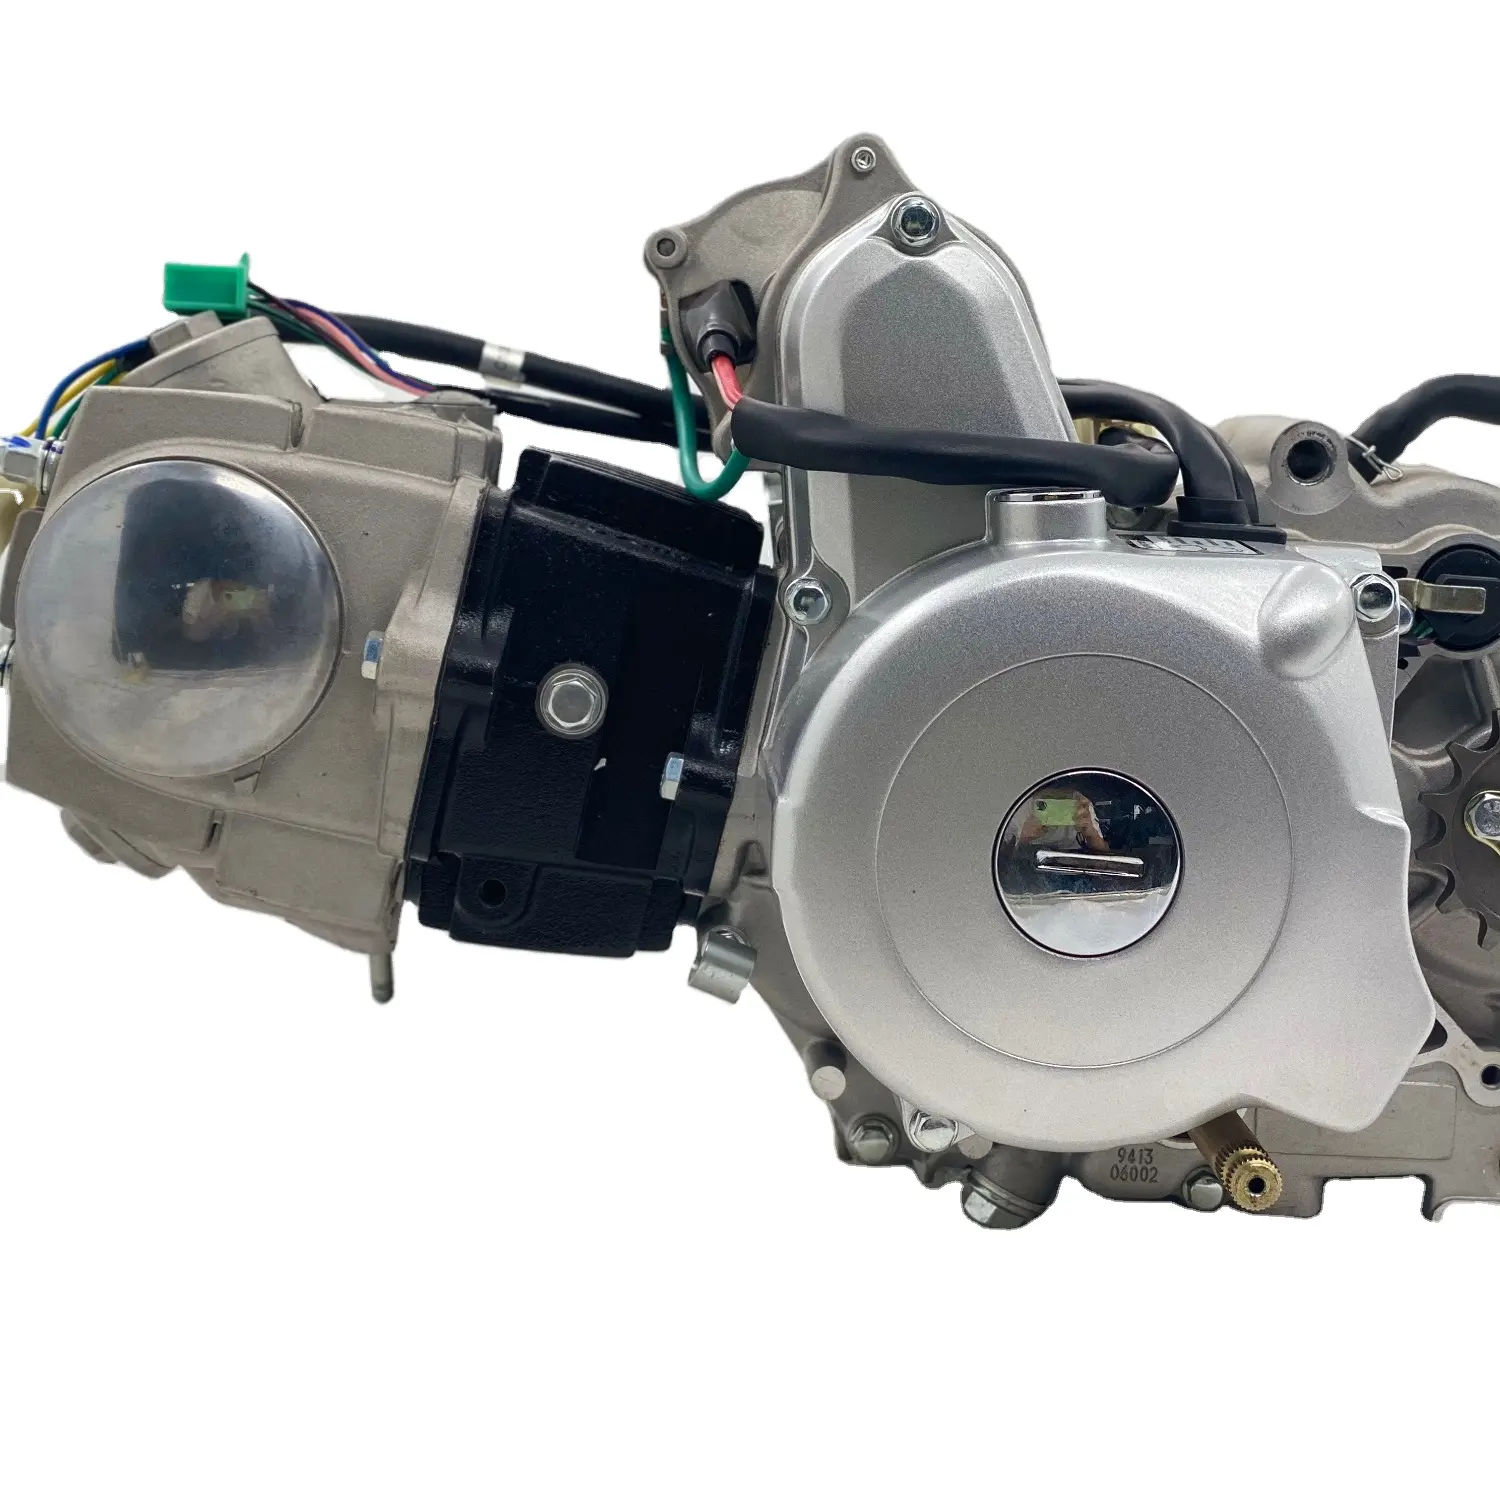 DAYANGパワーエンジン110CC 150cc 200cc 250ccガソリンエンジン三輪車部品信頼性の高い中国製大人用三輪車用